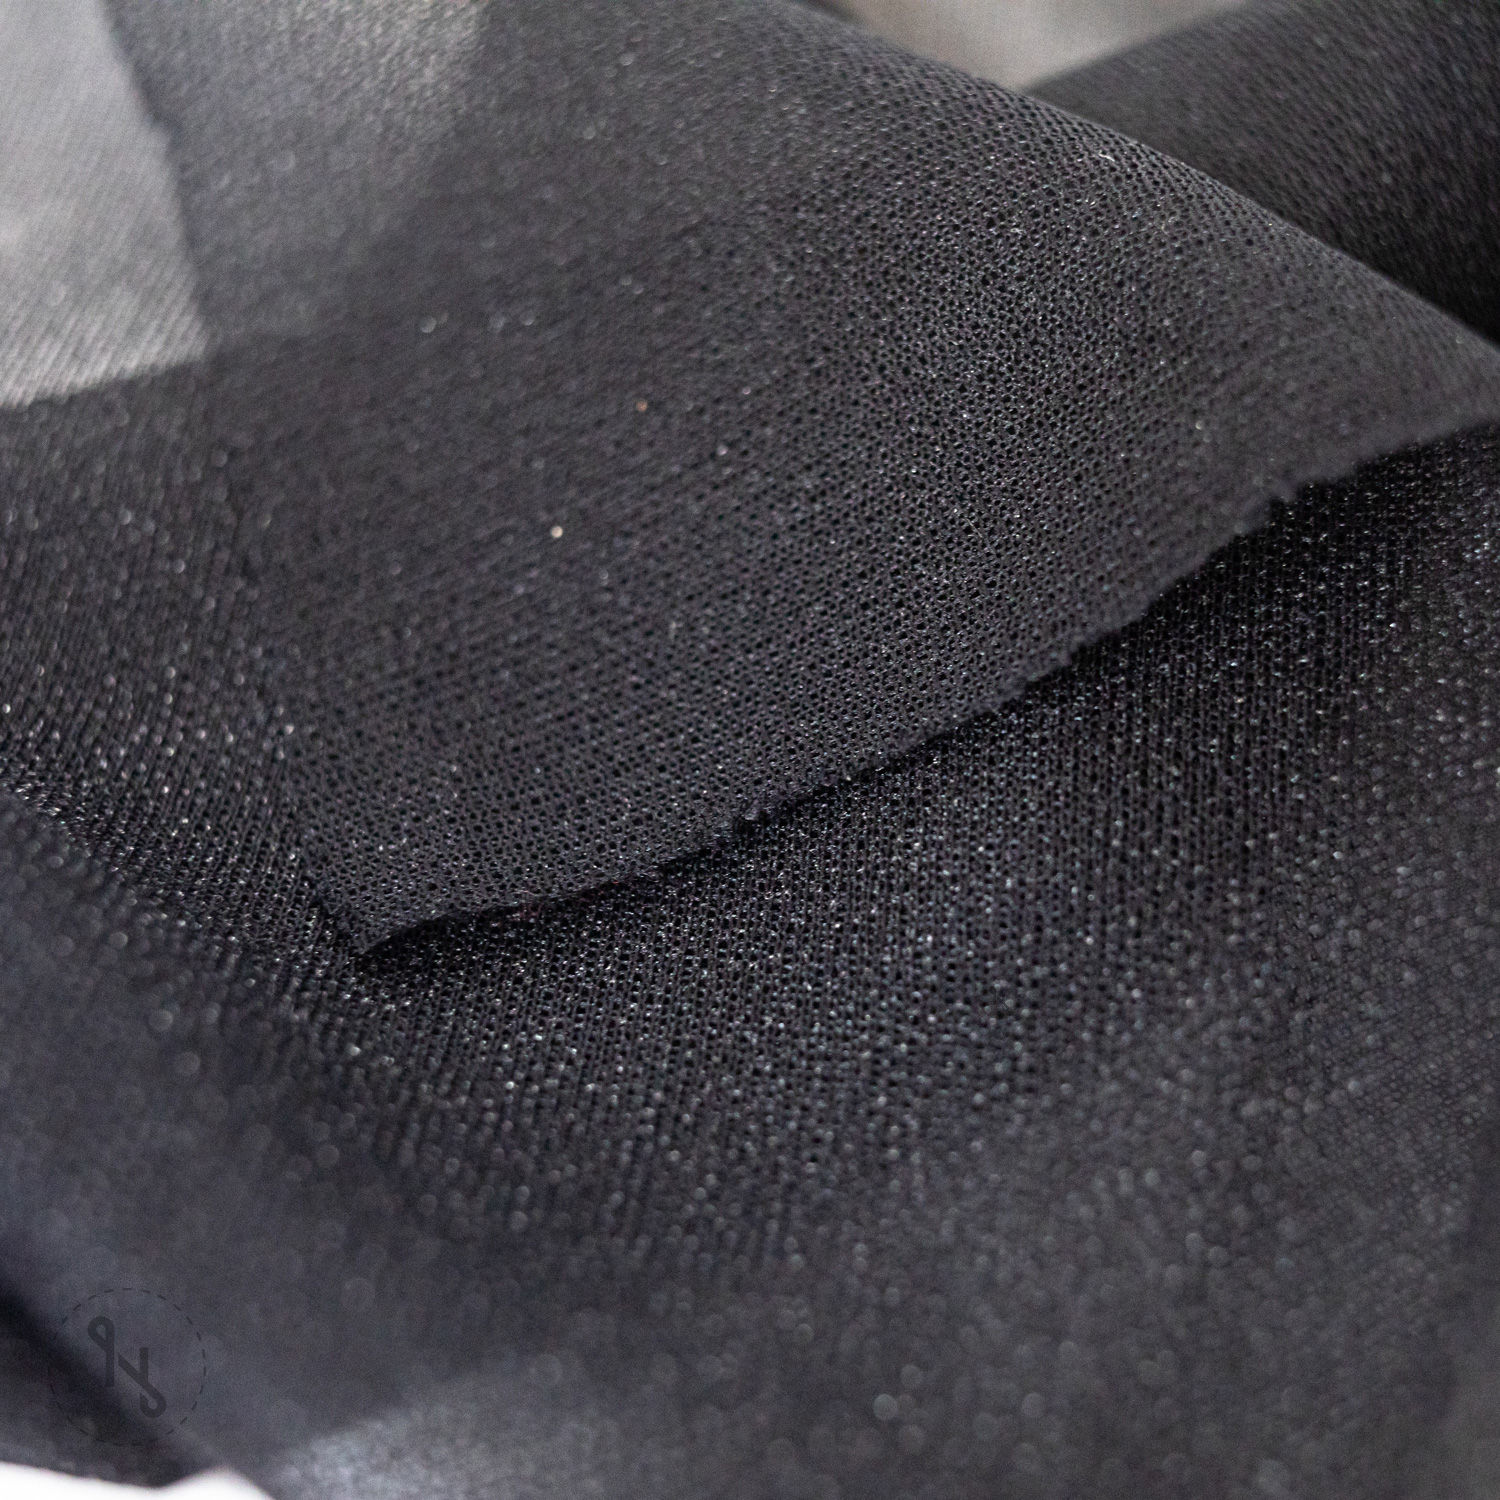 SULKY Tender Touch ist ein leichtes Vlies zum Aufbügeln. Dieses schützt die Haut vor den kratzigen Stichen des bestickten Kleidungsstücks.